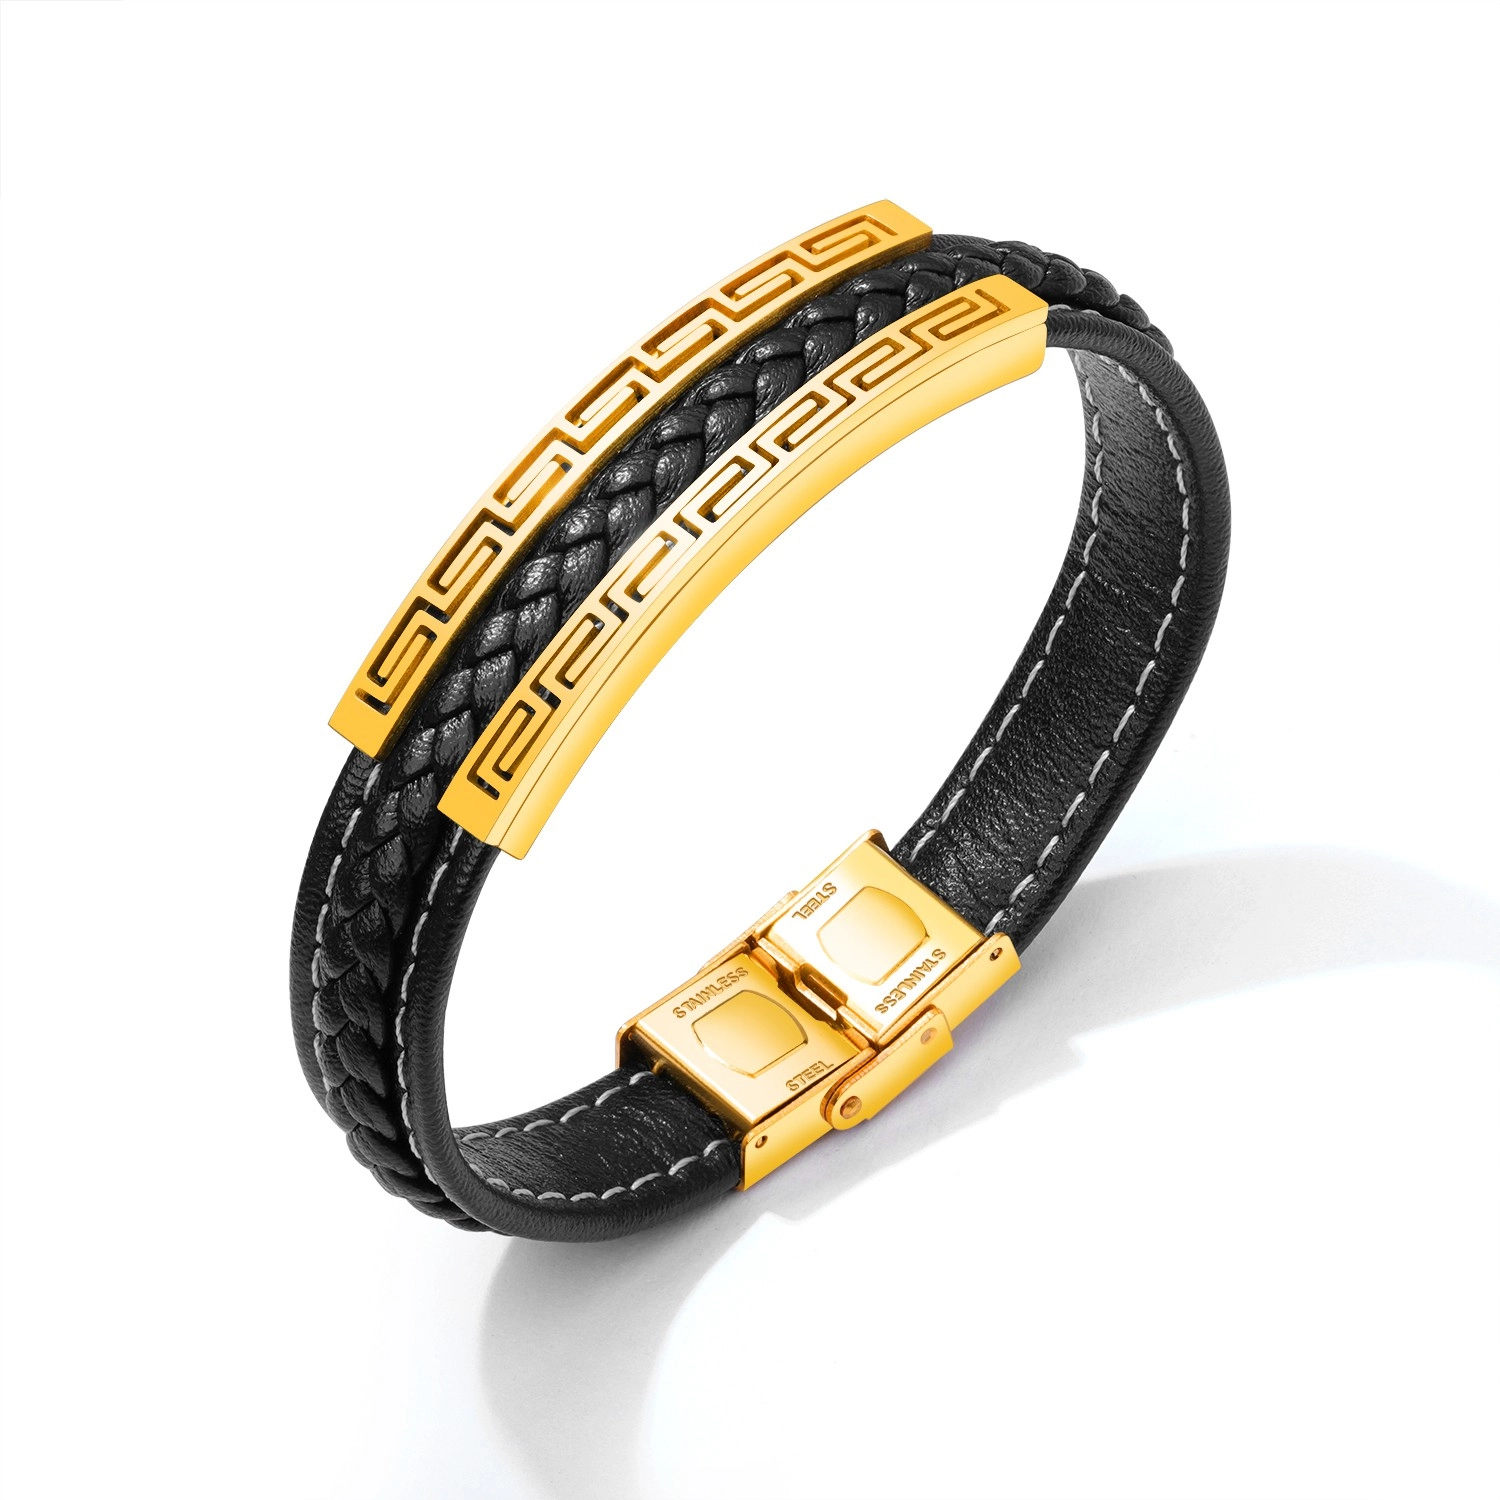 E-shop Šperky Eshop - Čierny koženkový náramok, oceľová známka zlatej farby - grécky kľúč SP53.16